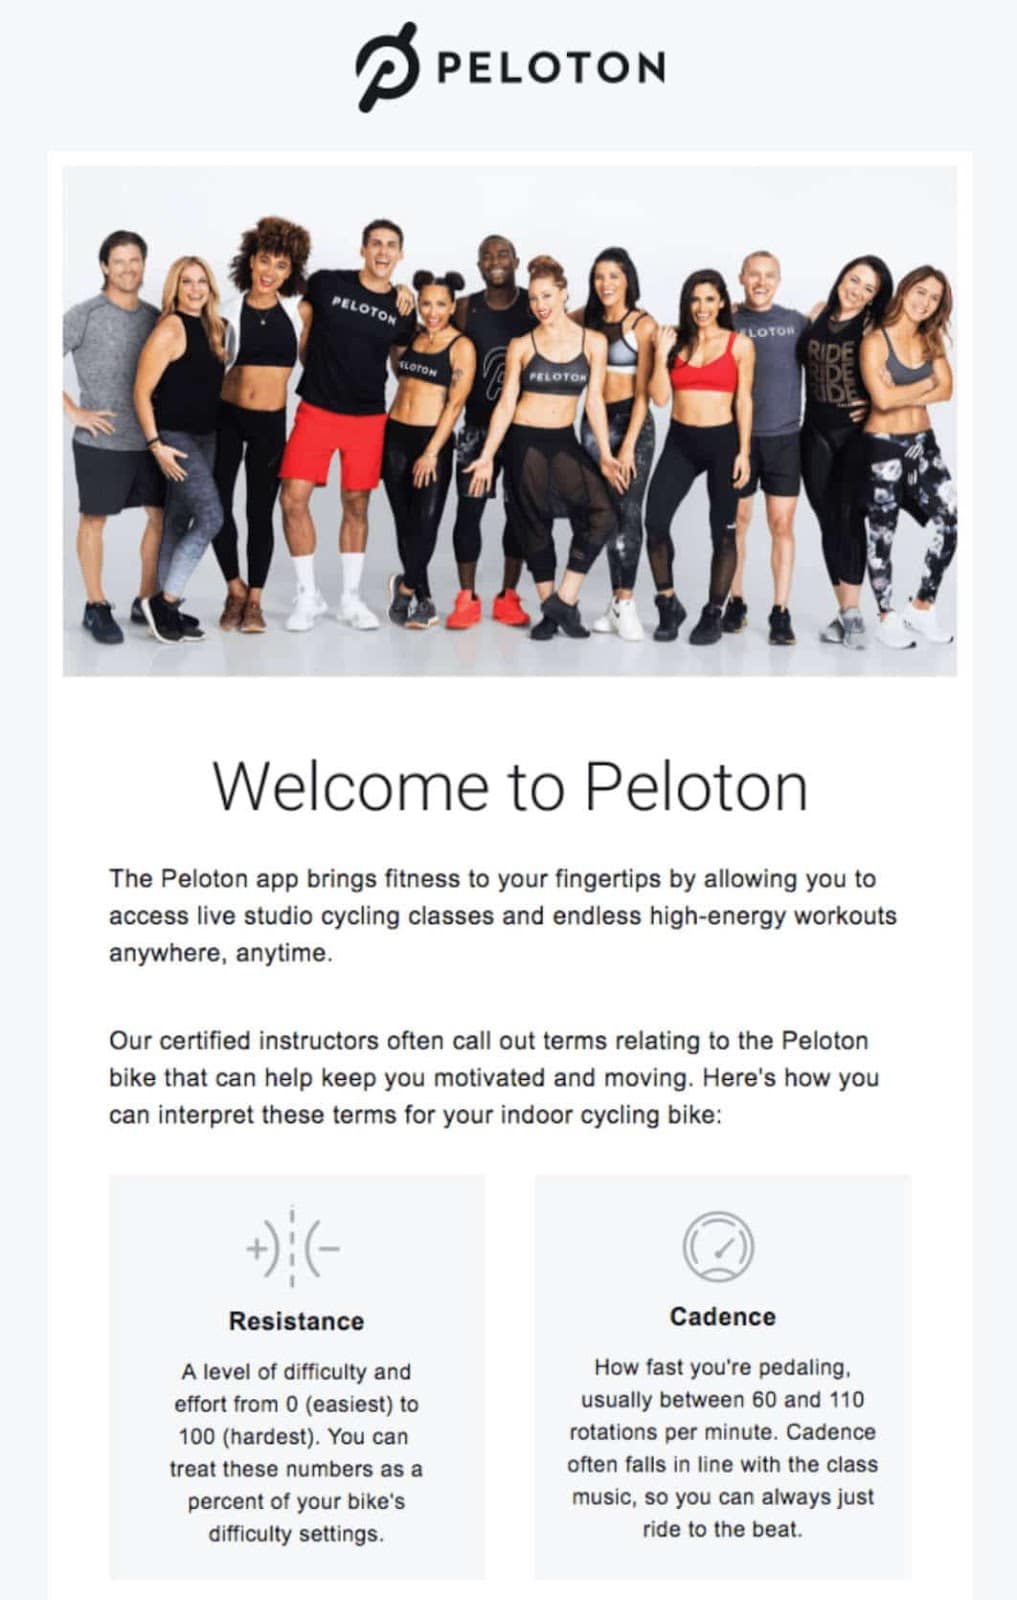 Esempio di un’email di benvenuto da Peloton che inizia con "Welcome to Peloton" e l’immagine di un gruppo di persone in tenuta sportiva